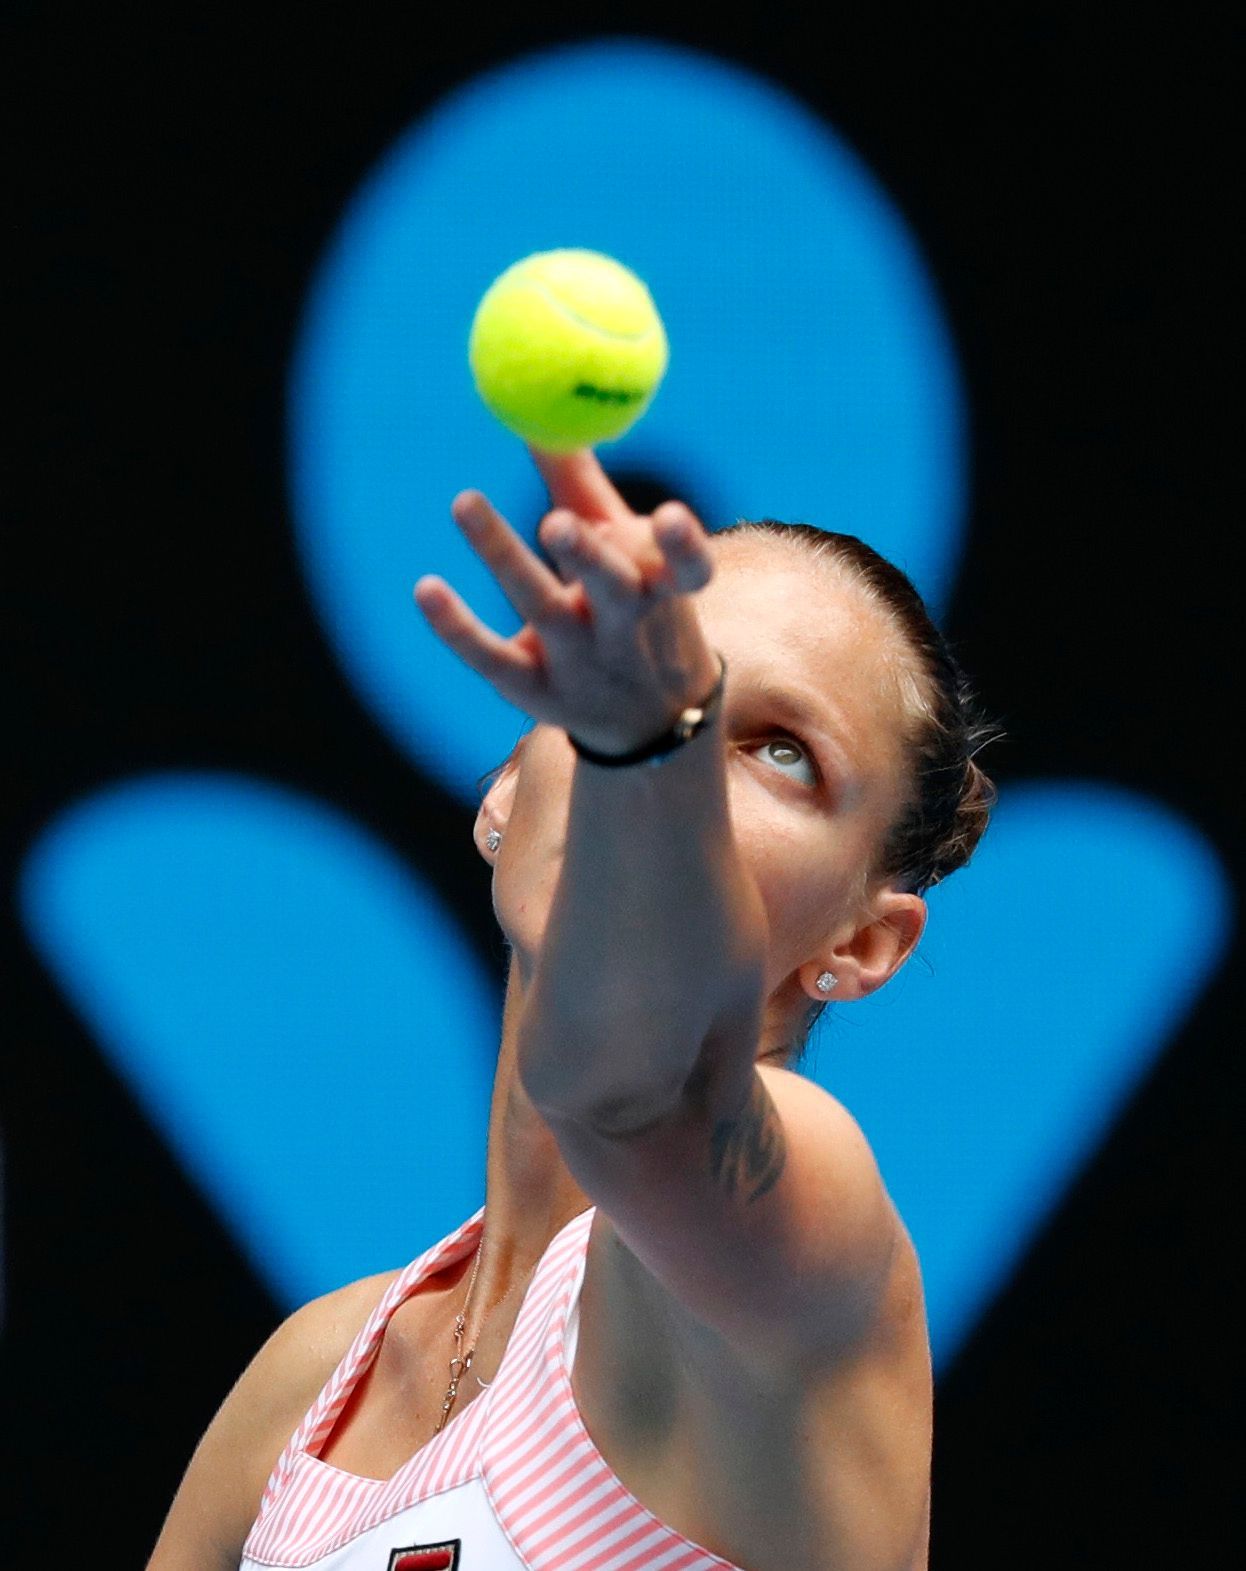 Karolína Plíšková ve druhém kole Australian Open